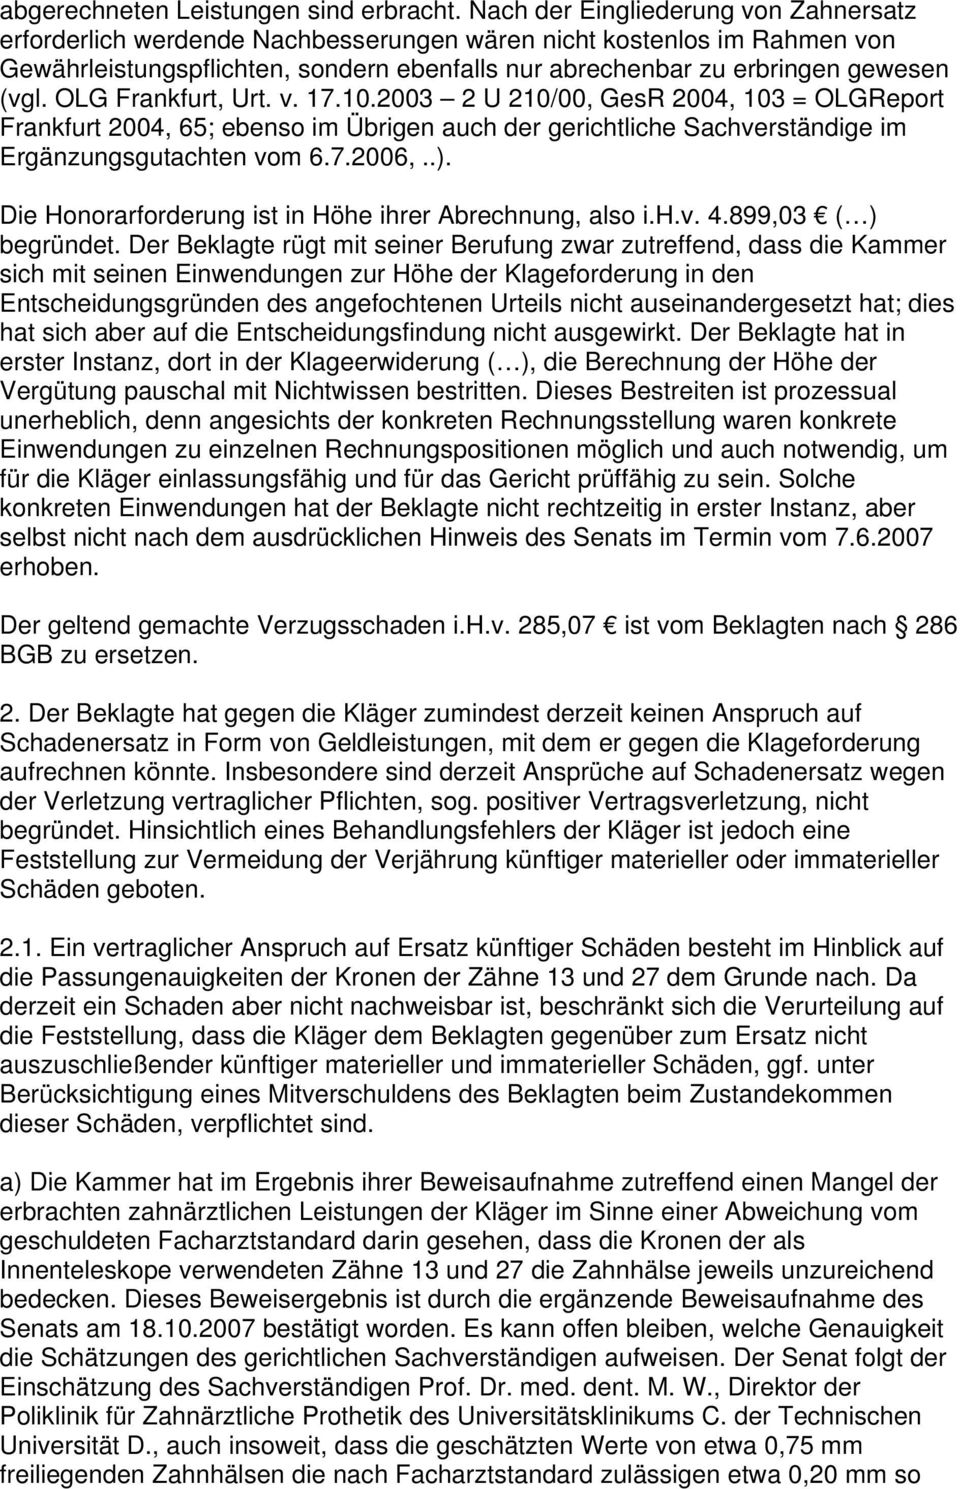 OLG Frankfurt, Urt. v. 17.10.2003 2 U 210/00, GesR 2004, 103 = OLGReport Frankfurt 2004, 65; ebenso im Übrigen auch der gerichtliche Sachverständige im Ergänzungsgutachten vom 6.7.2006,..).